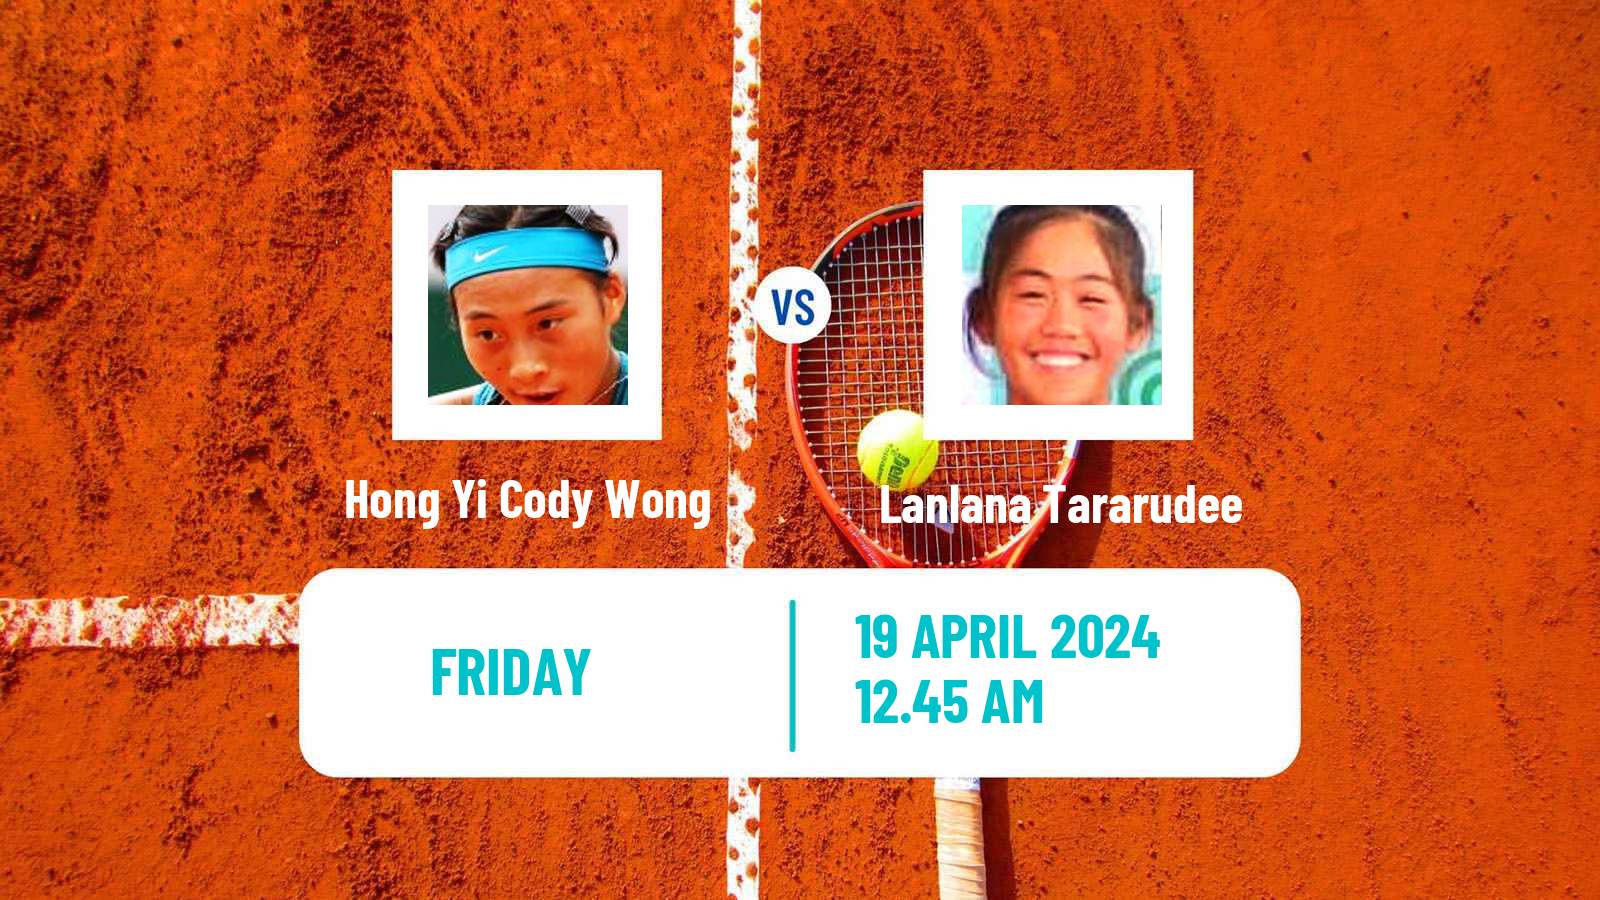 Tennis ITF W50 Shenzhen 2 Women Hong Yi Cody Wong - Lanlana Tararudee